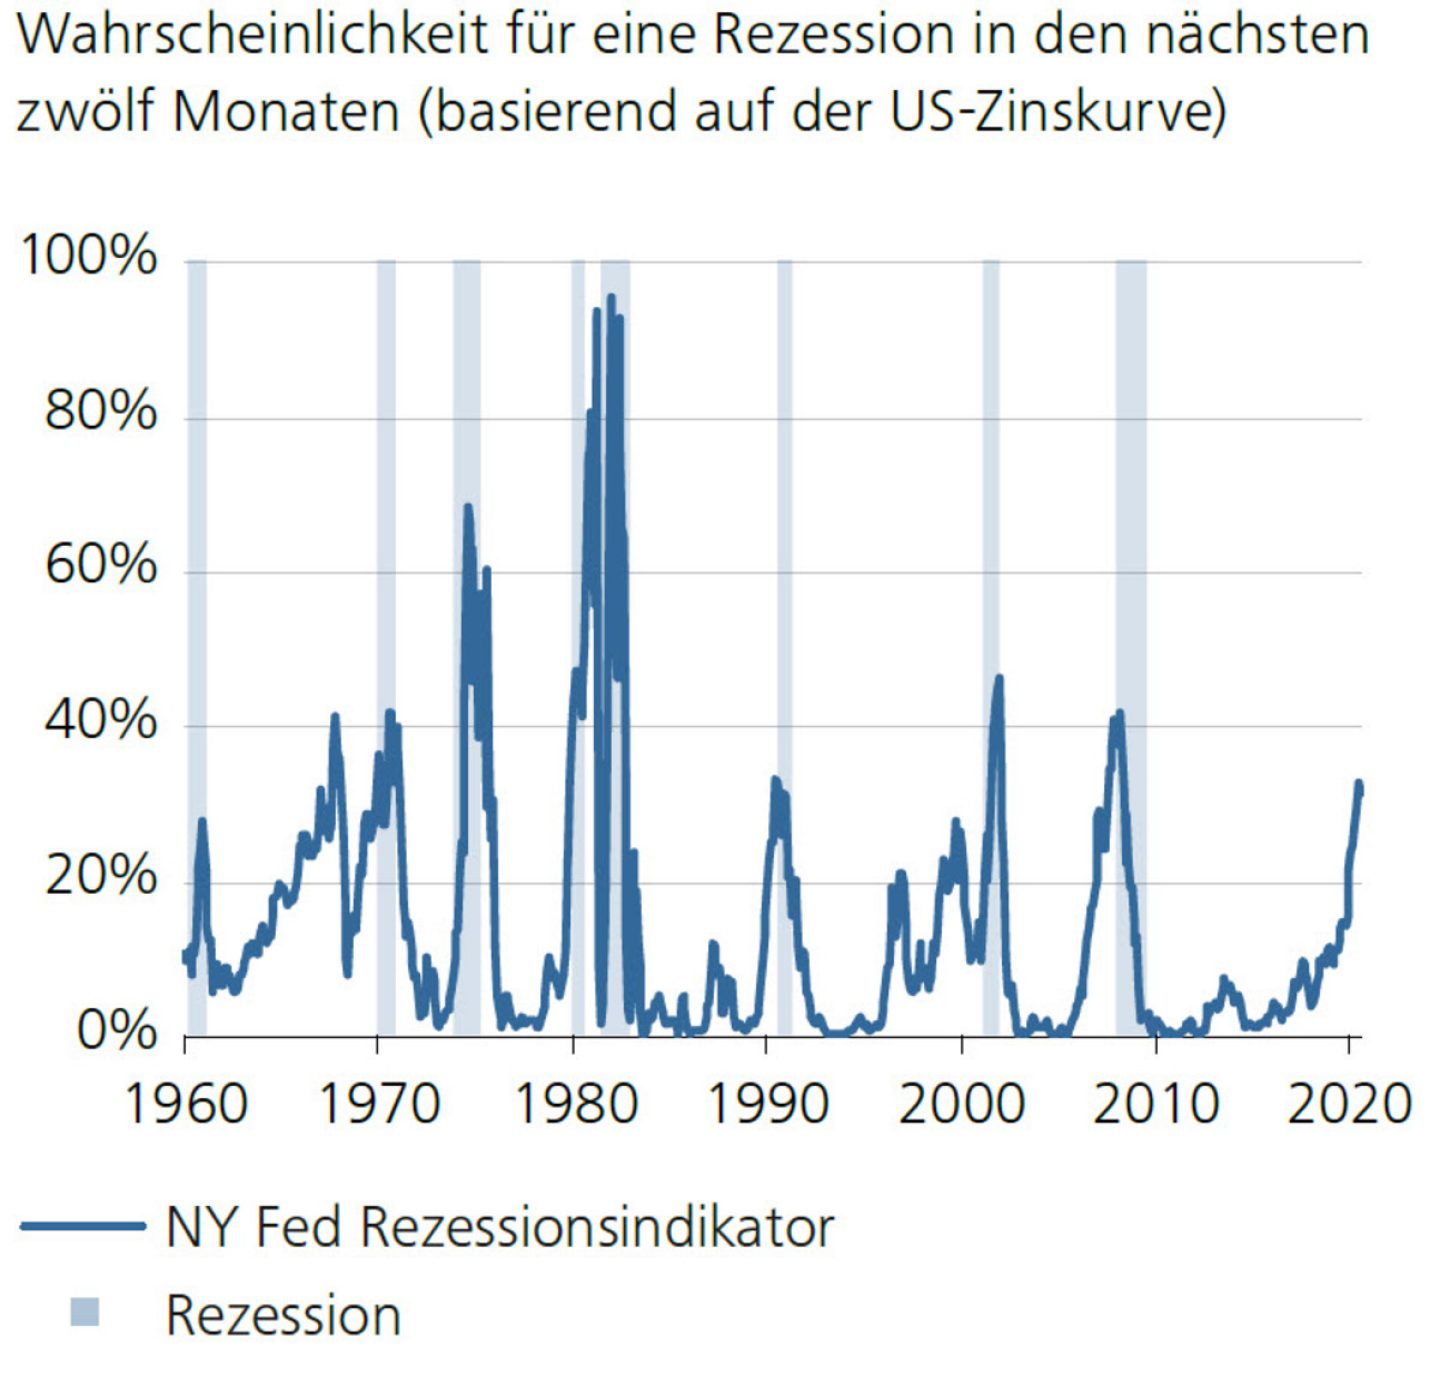 Wahrscheinlichkeit für eine Rezession in den nächsten zwölf Monaten (basierend auf der US-Zinskurve)